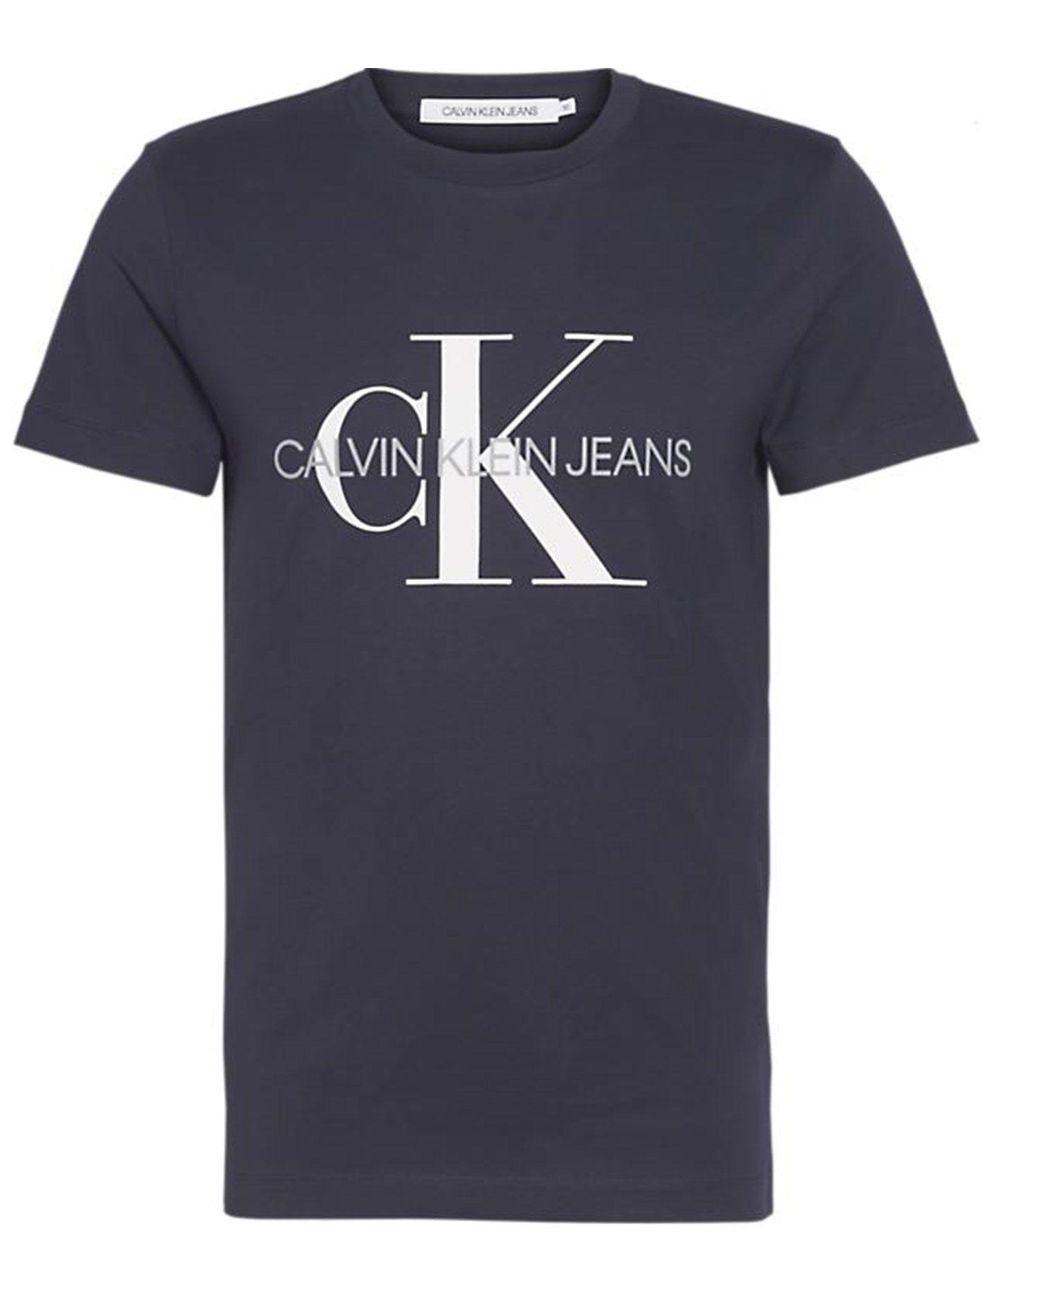 Calvin Klein Cotton T-shirt in Blue for Men - Lyst